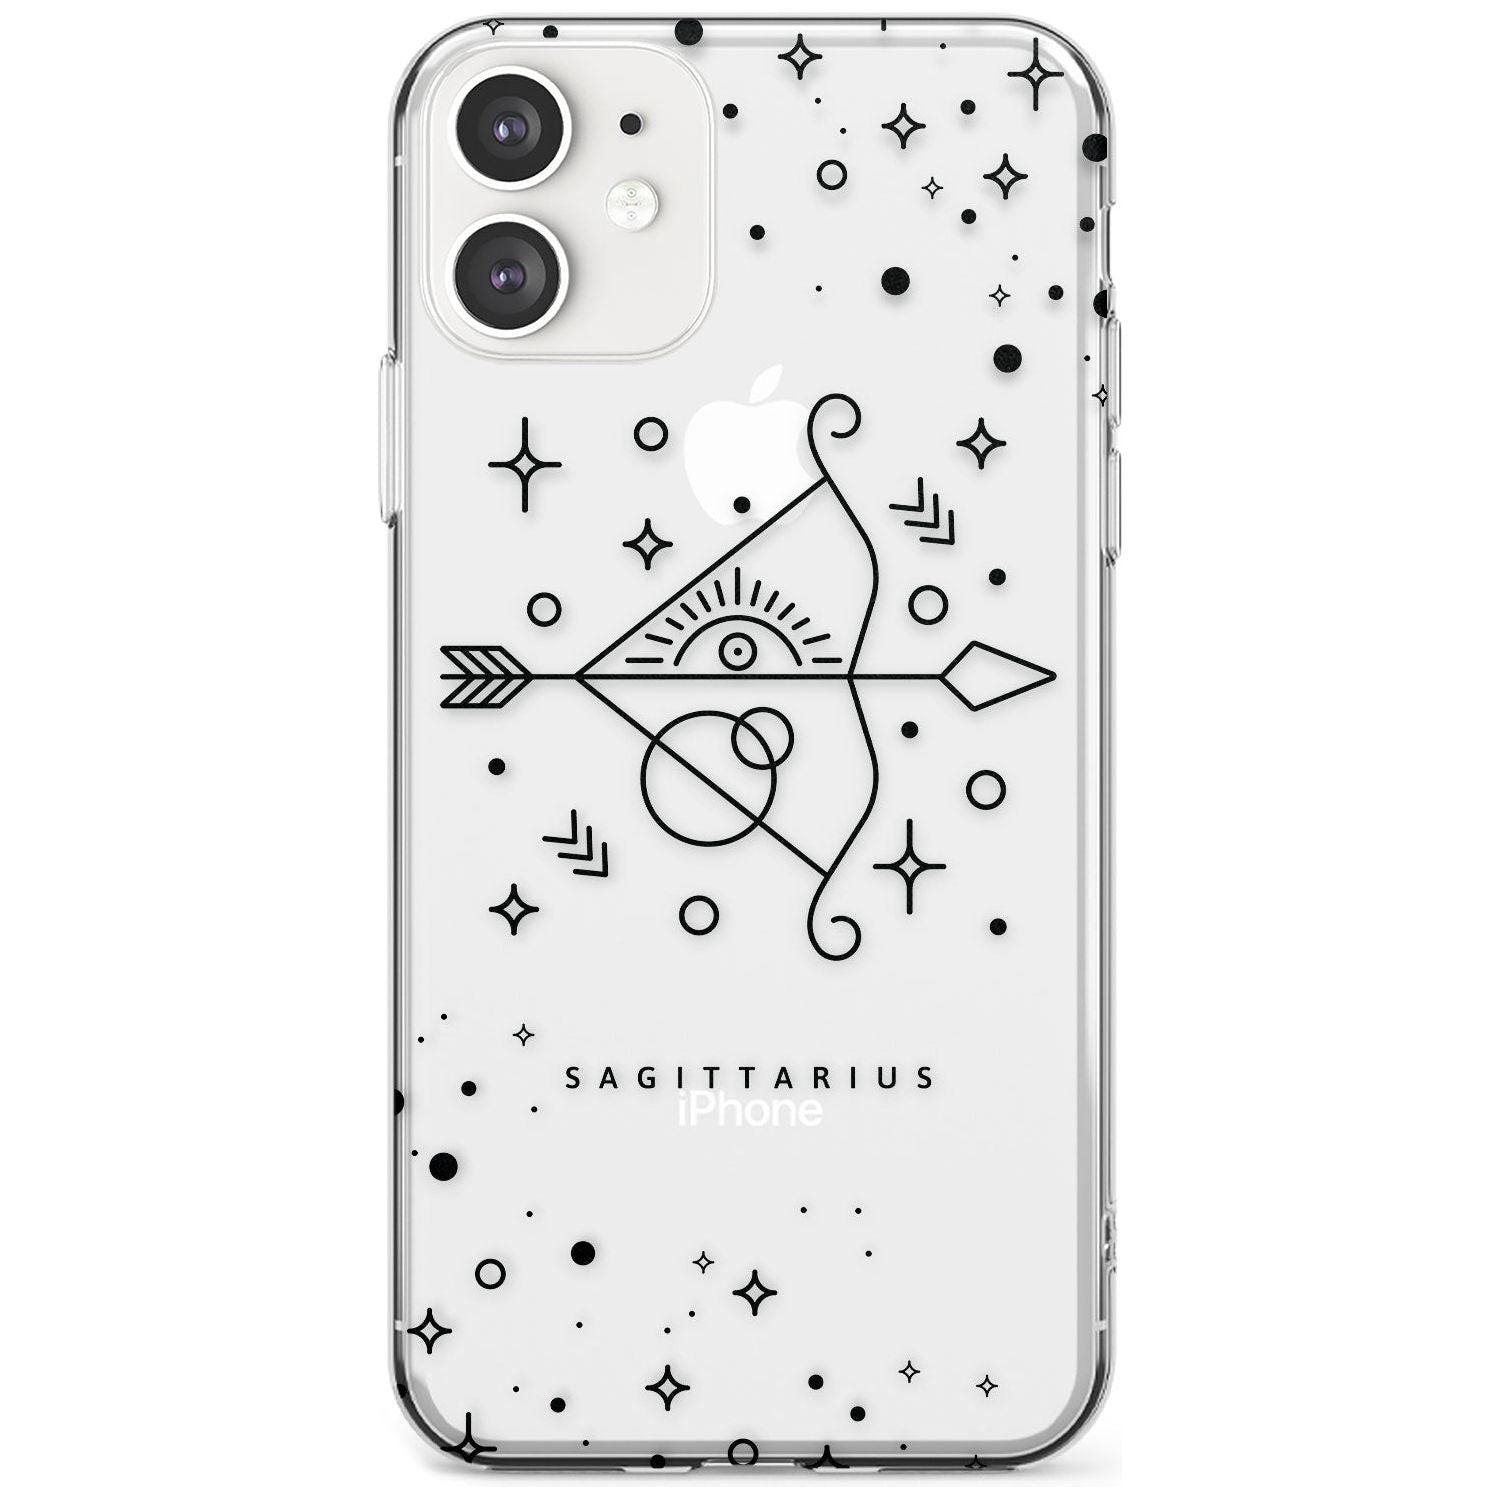 Sagittarius Emblem - Transparent Design Slim TPU Phone Case for iPhone 11